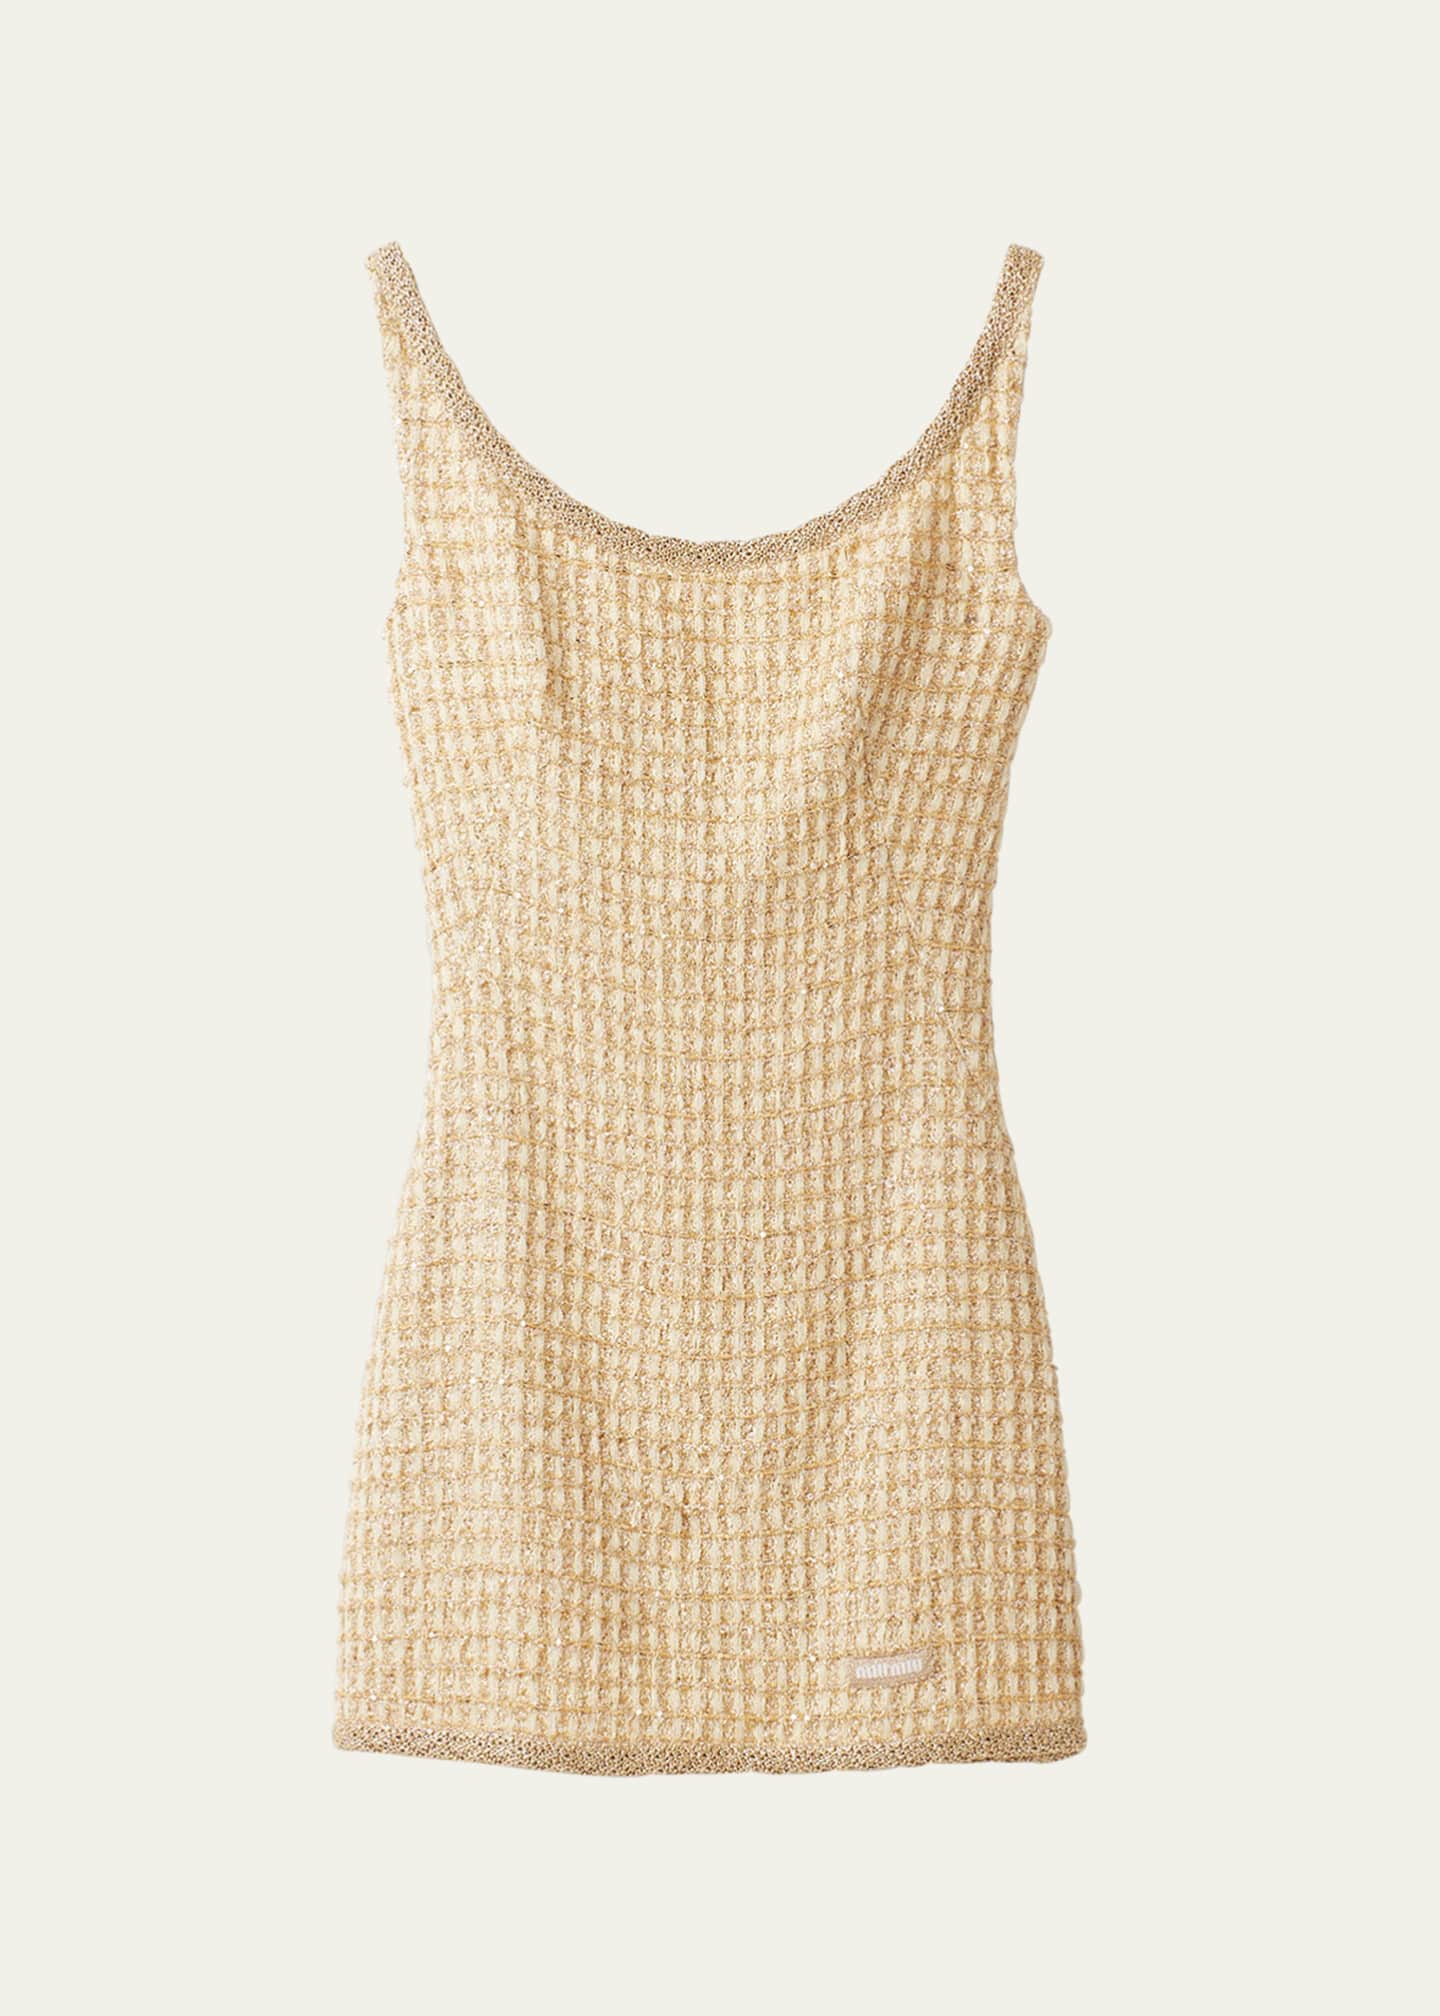 Miu Miu Crochet Mini Dress - Bergdorf Goodman